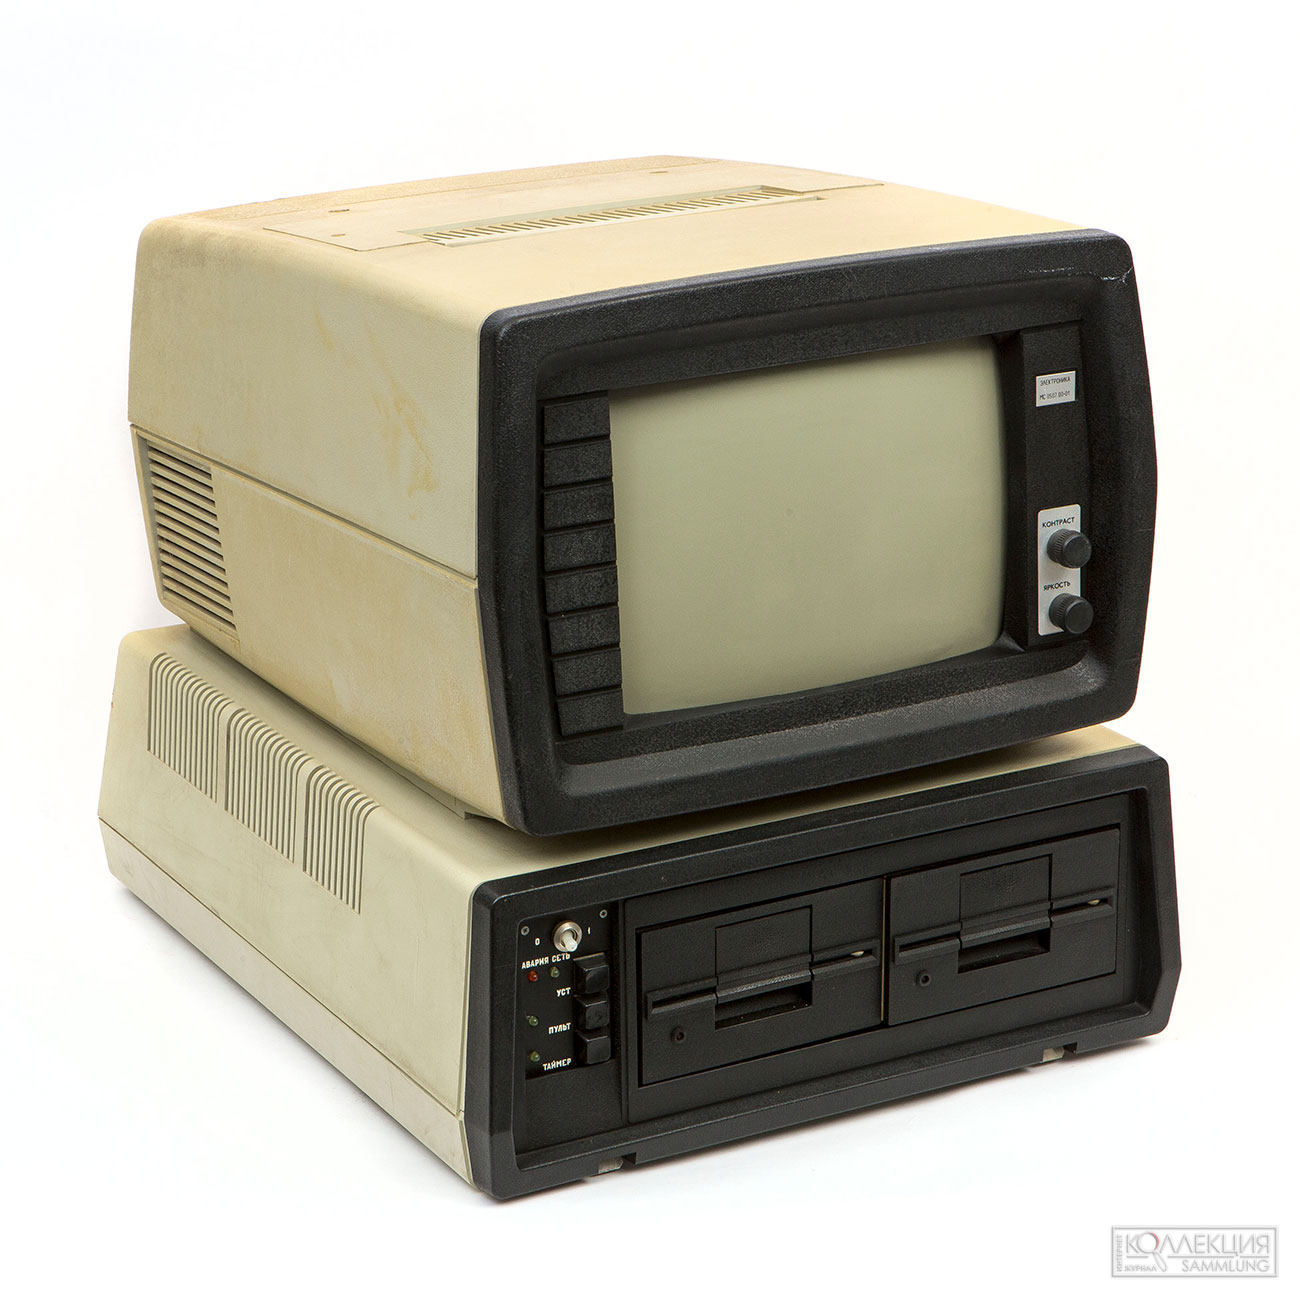 Профессиональная электронно-вычислительная машина ДВК-3, завод «Квант», середина 1980-х, экспонат предоставлен Яндекс Музеем